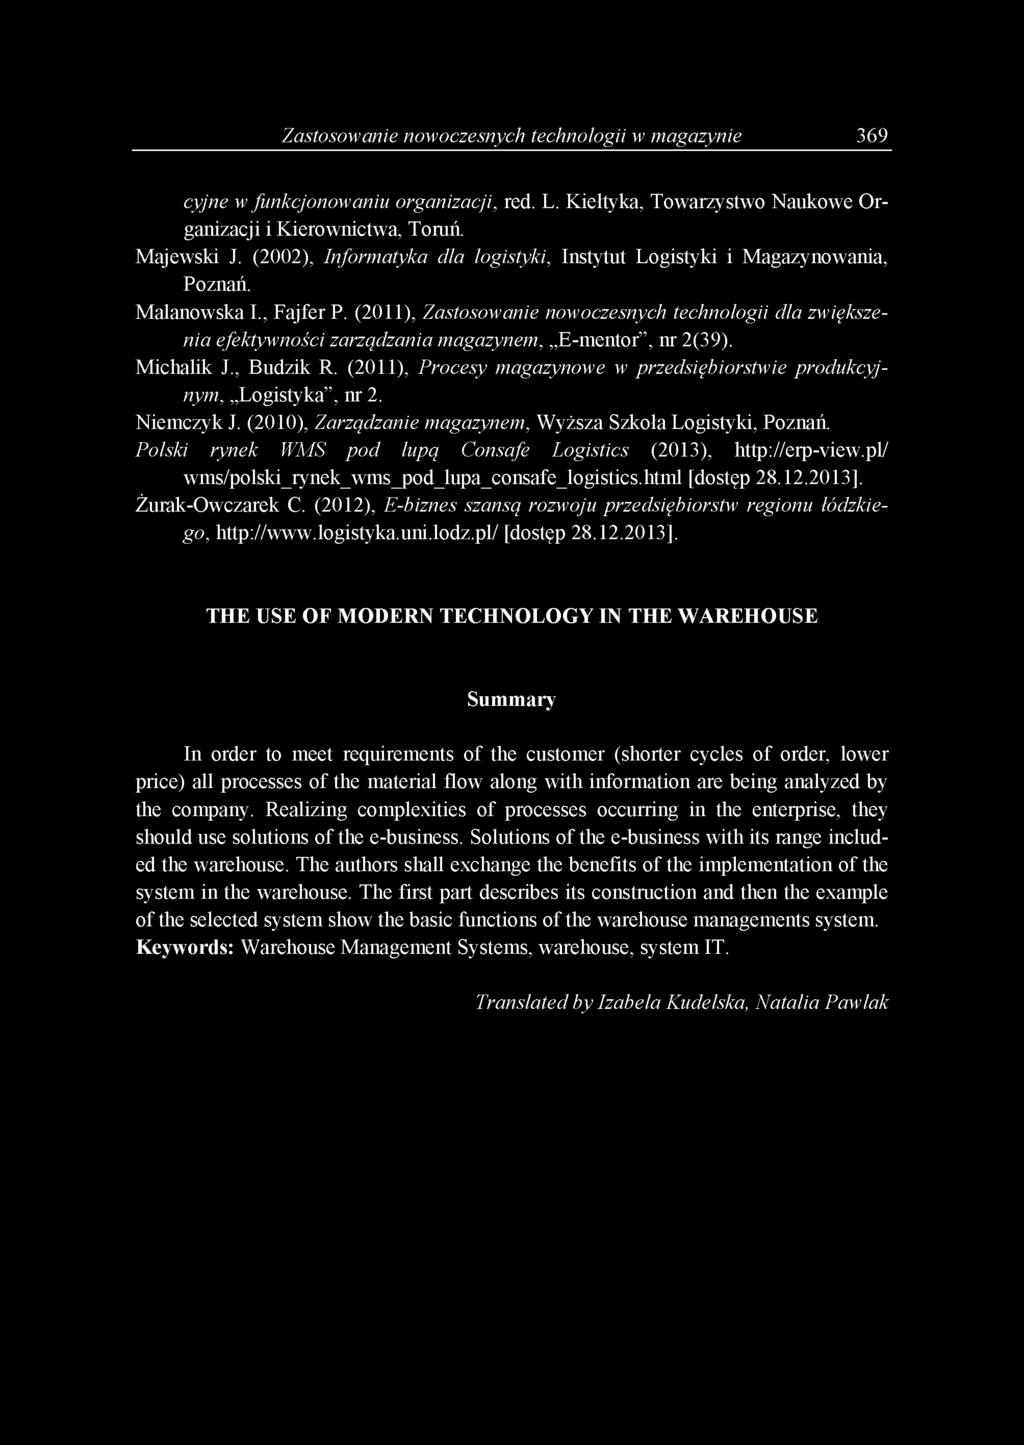 (2011), Zastosowanie nowoczesnych technologii dla zwiększenia efektywności zarządzania magazynem, E-mentor, nr 2(39). Michalik J., Budzik R.